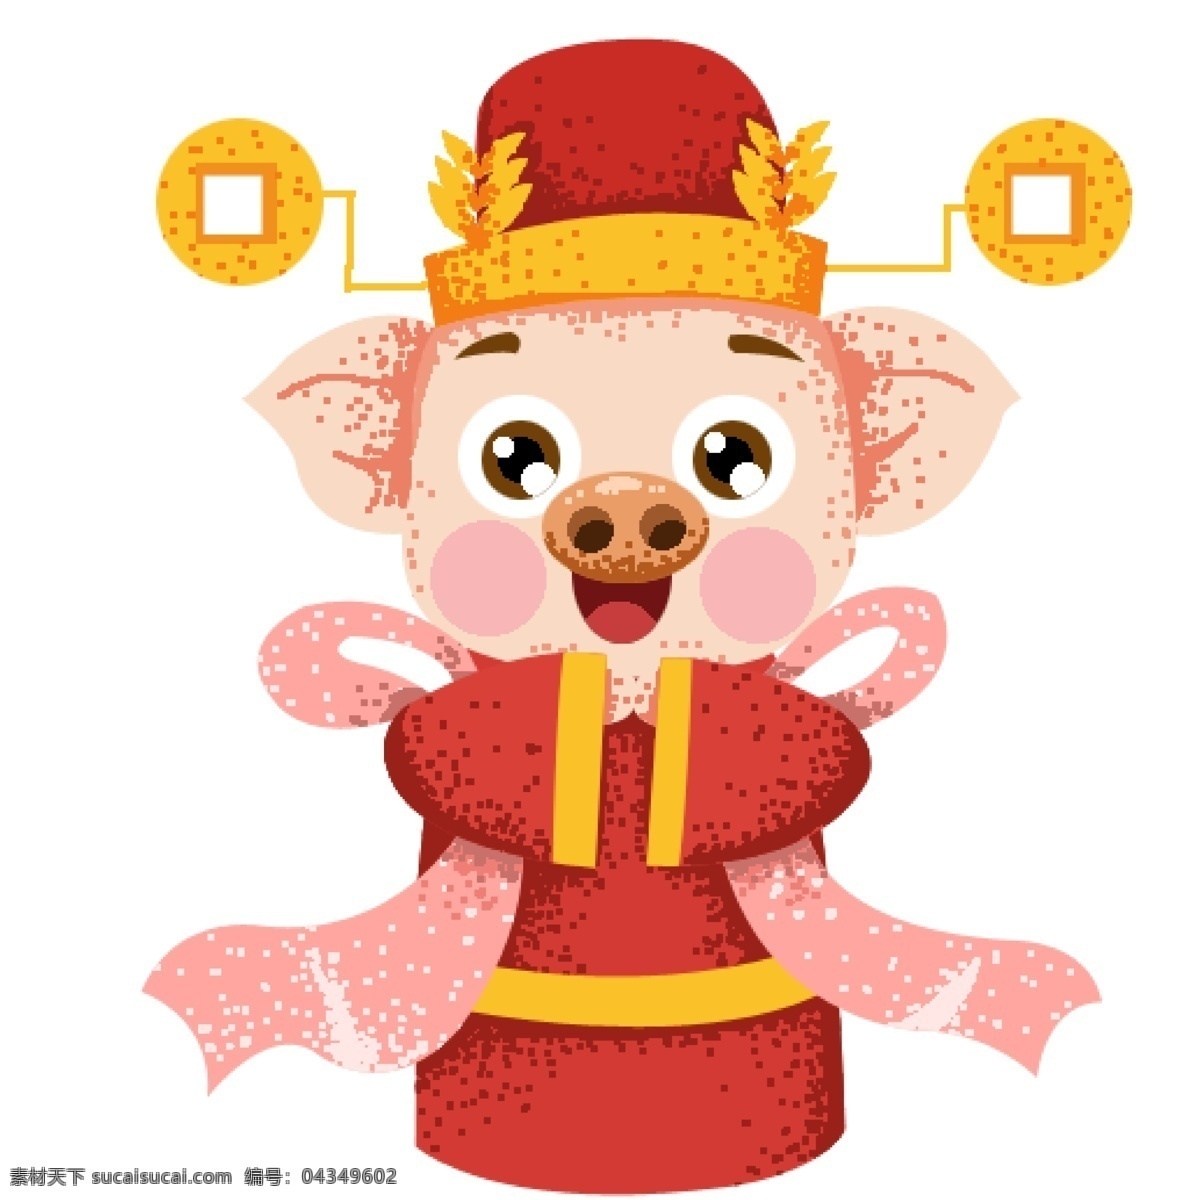 喜庆 大年初二 拜年 财神 猪 卡通 插画 红色 手绘 财神到 春节元素 2019年 新年 猪年 小猪形象 猪年形象